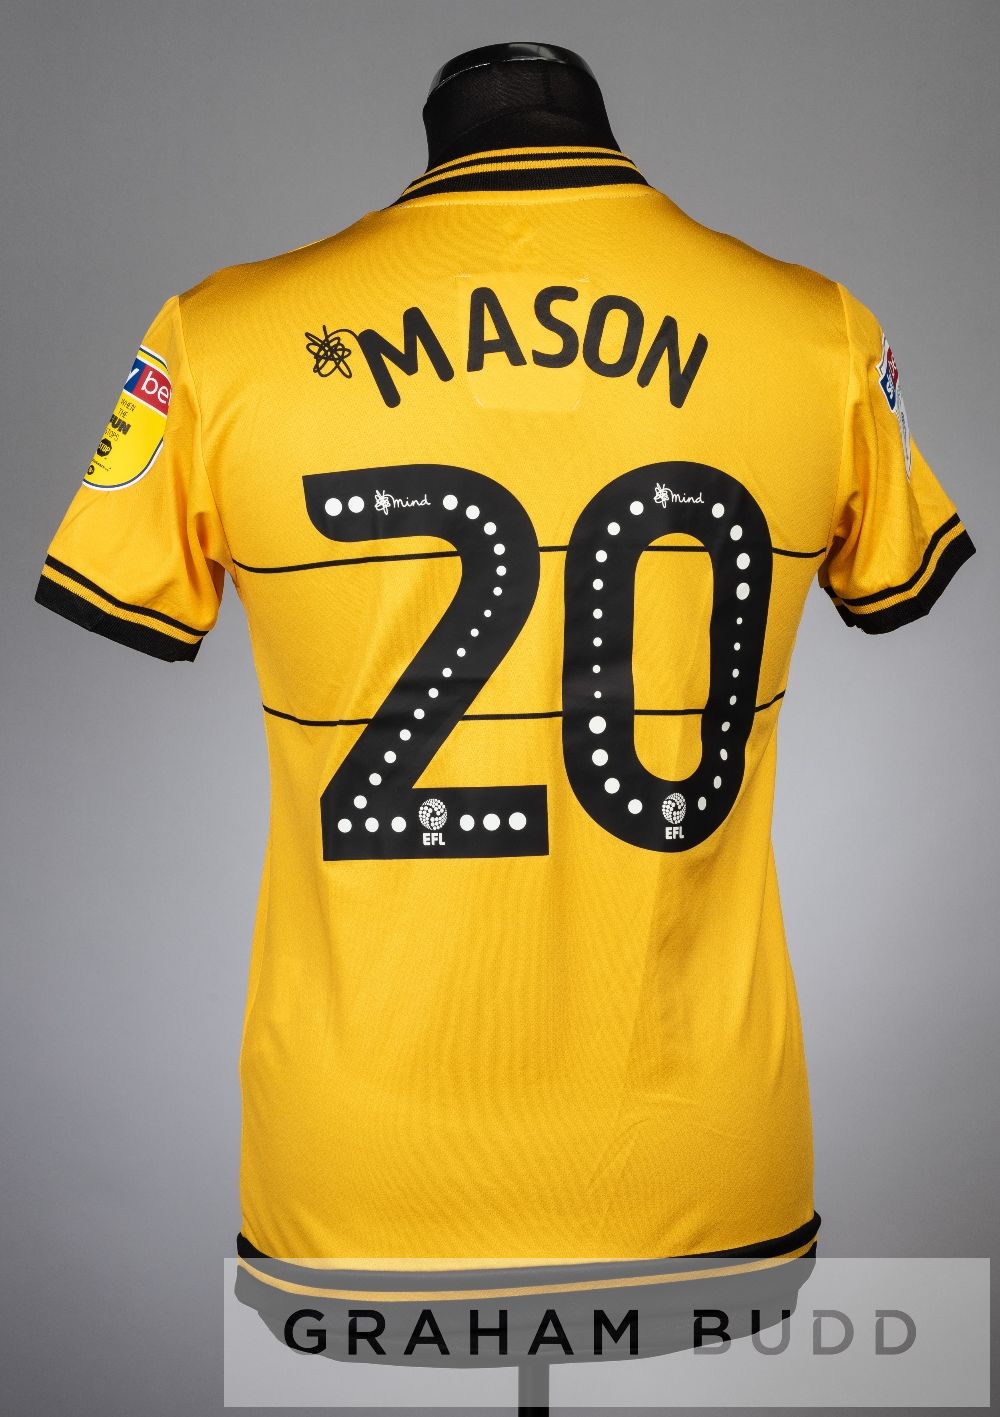 Two Joe Mason yellow and black MK Dons no.20 third choice jerseys, season 2019-20, both short- - Image 2 of 4